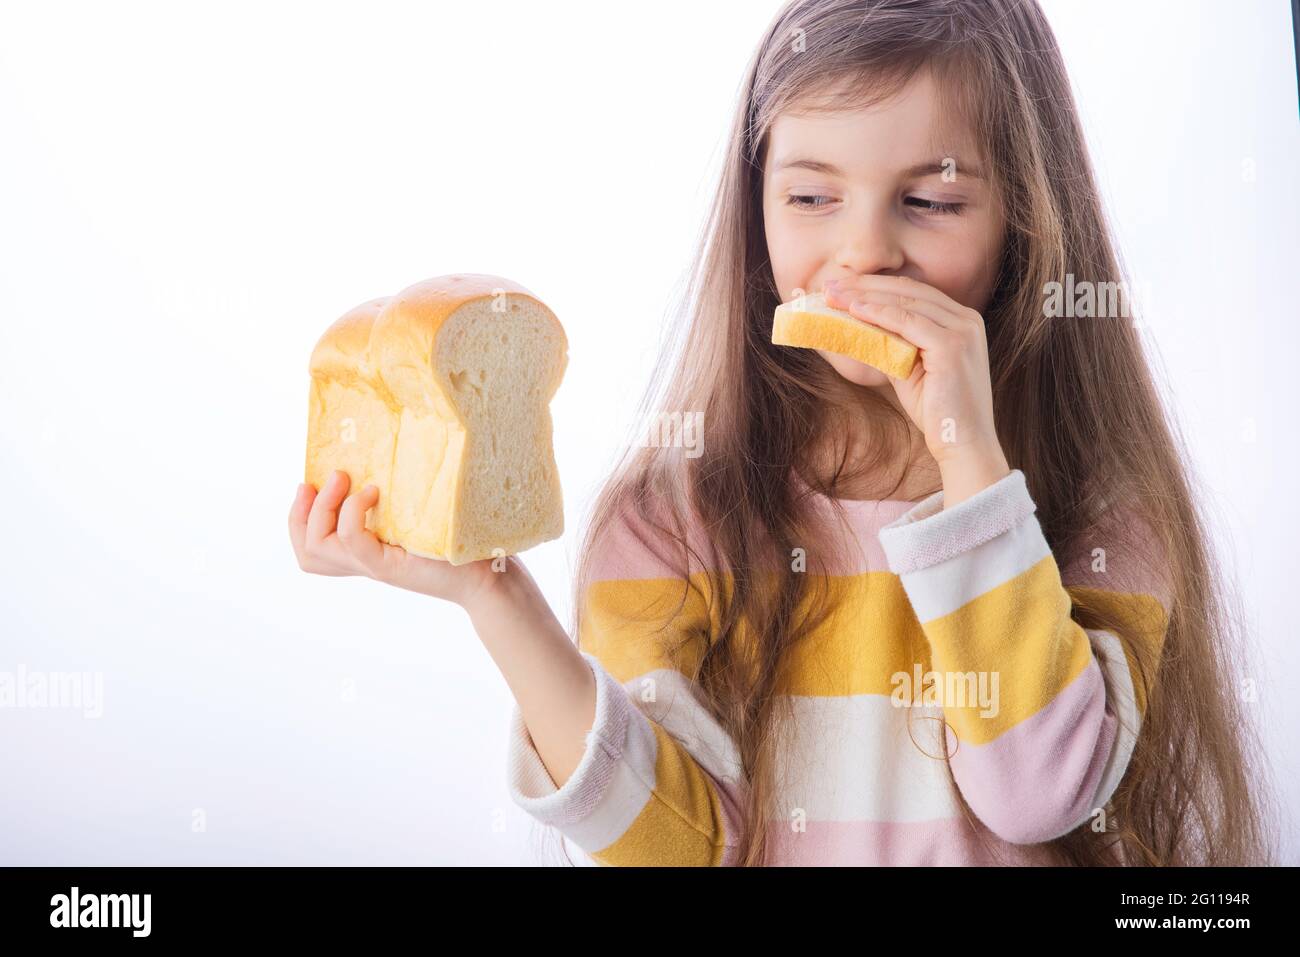 Une petite fille tient une tranche de pain sain fait maison Banque D'Images